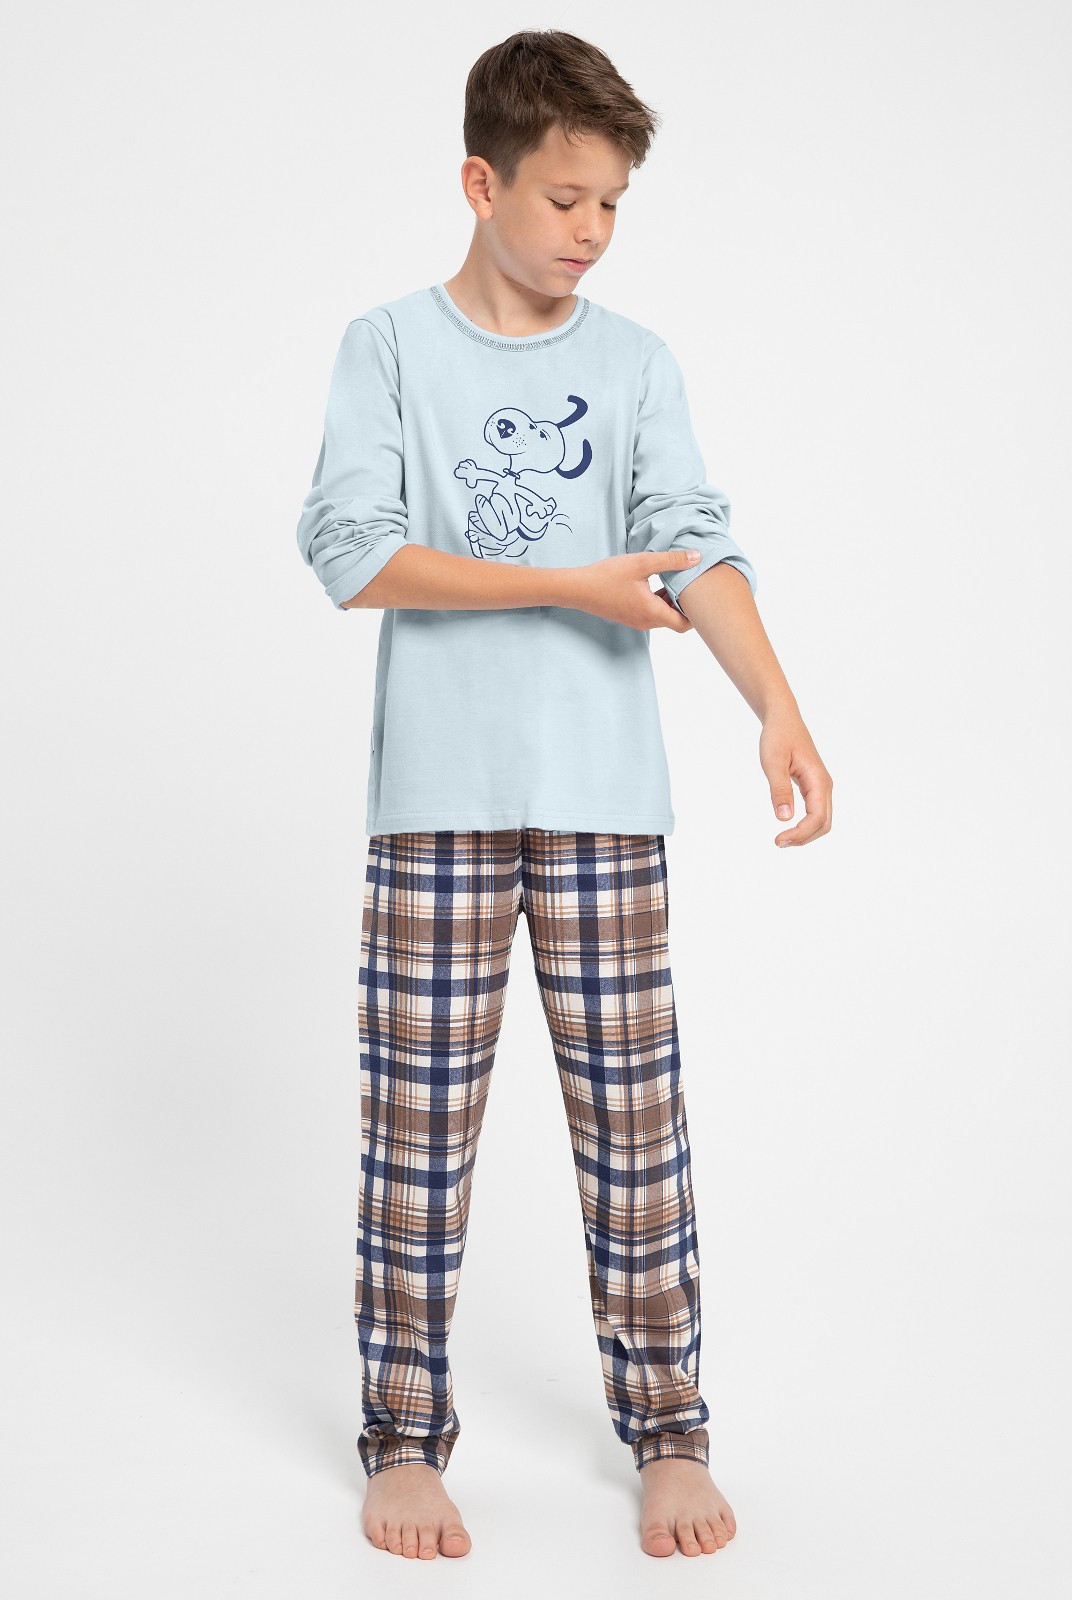 Chlapecké pyžamo Taro Parker 3089 dł/r 146-158 Z24 modrá 152